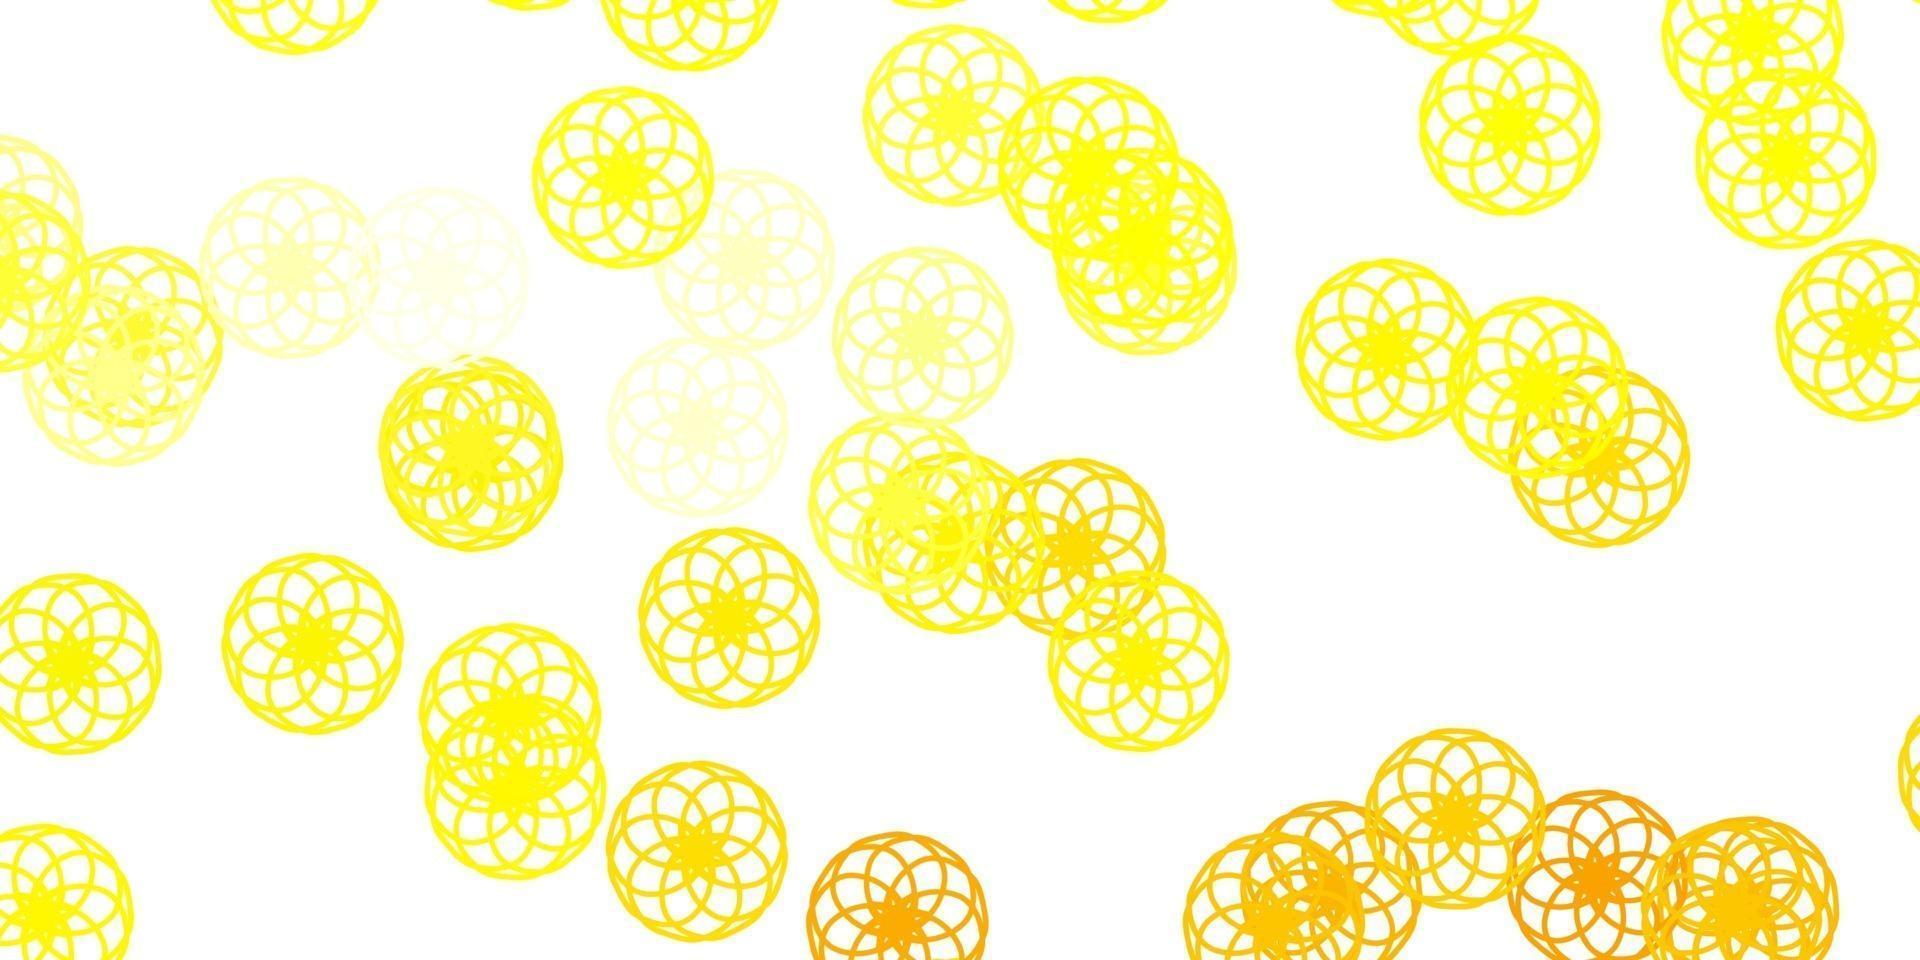 modello vettoriale giallo chiaro con sfere.